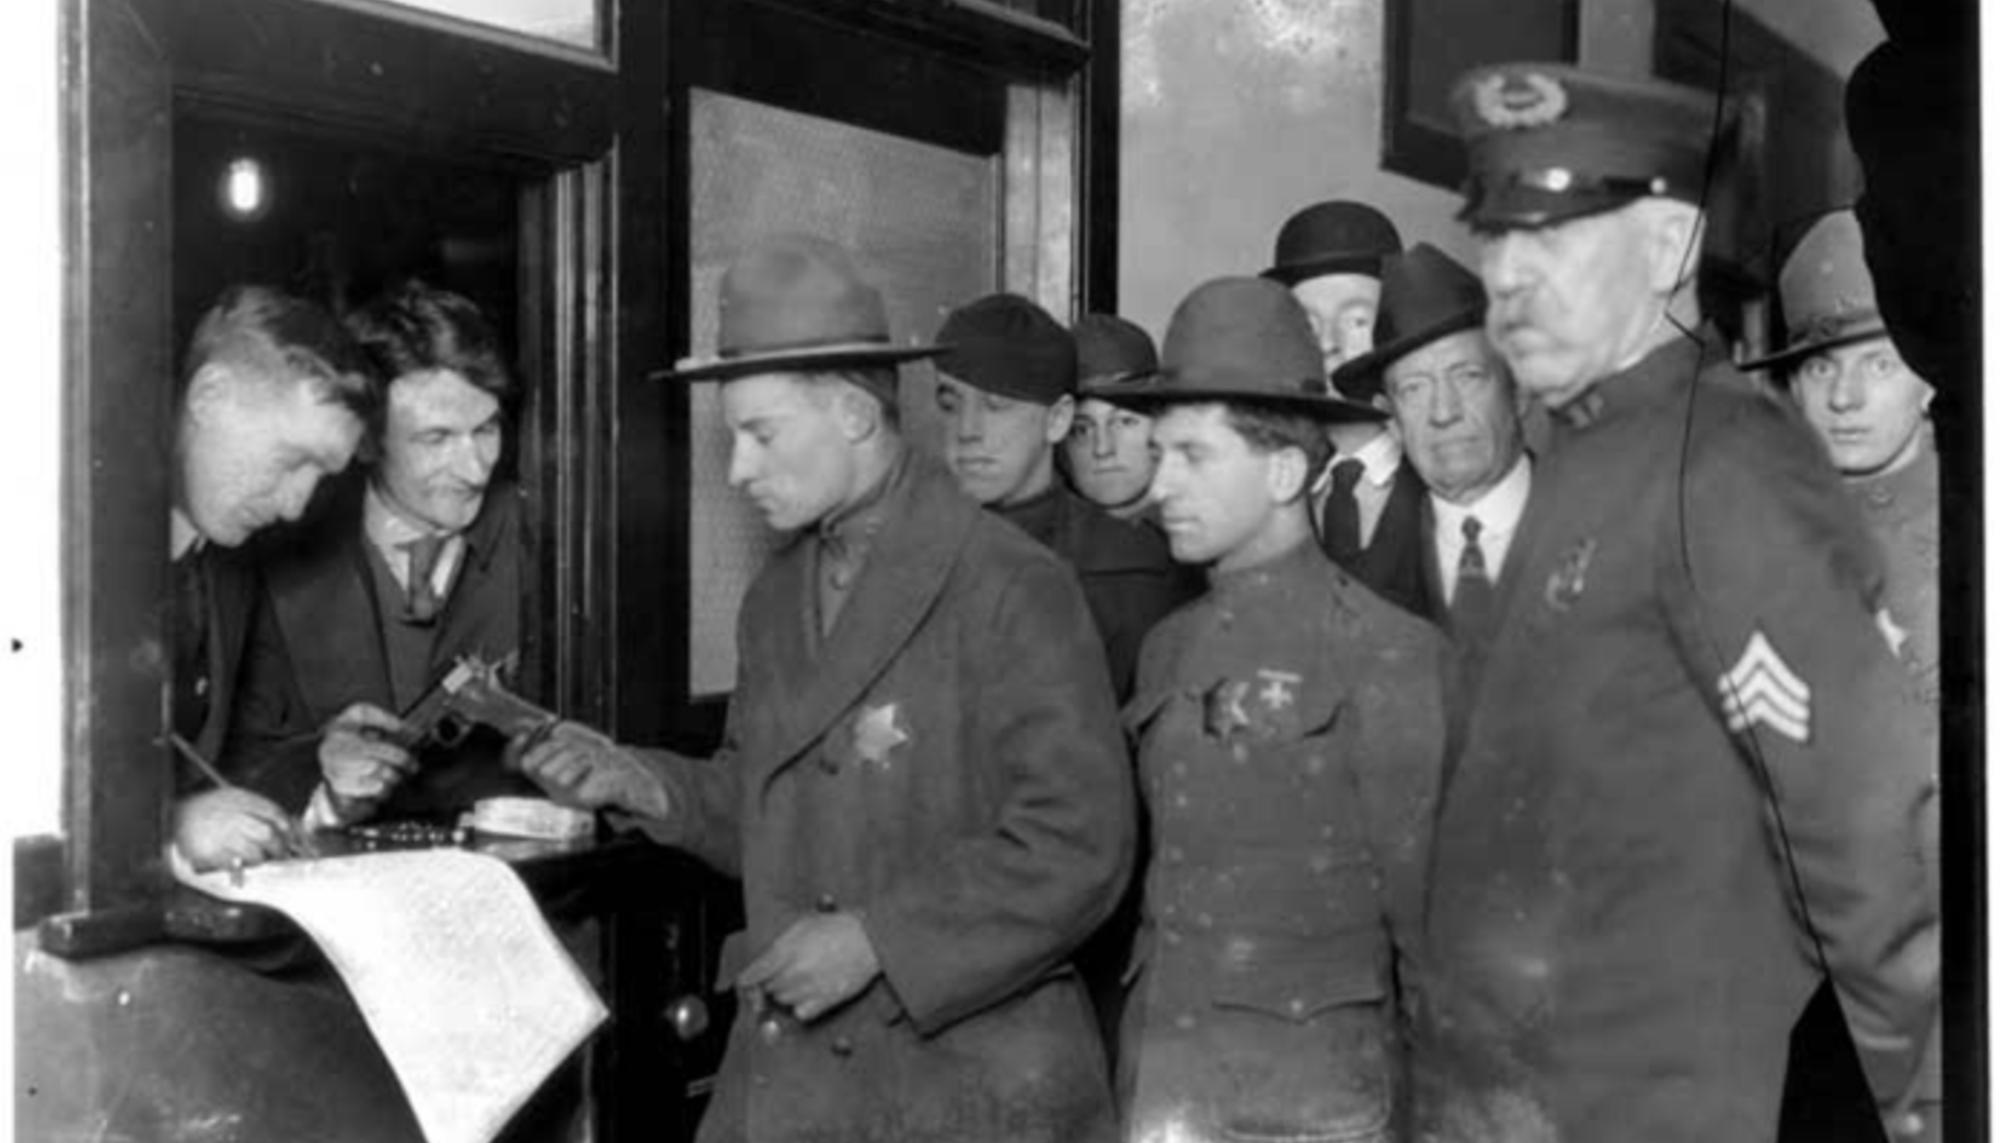 Seattle General Strike deputies receiving weapons, February 6, 1919. Webster & Stevens